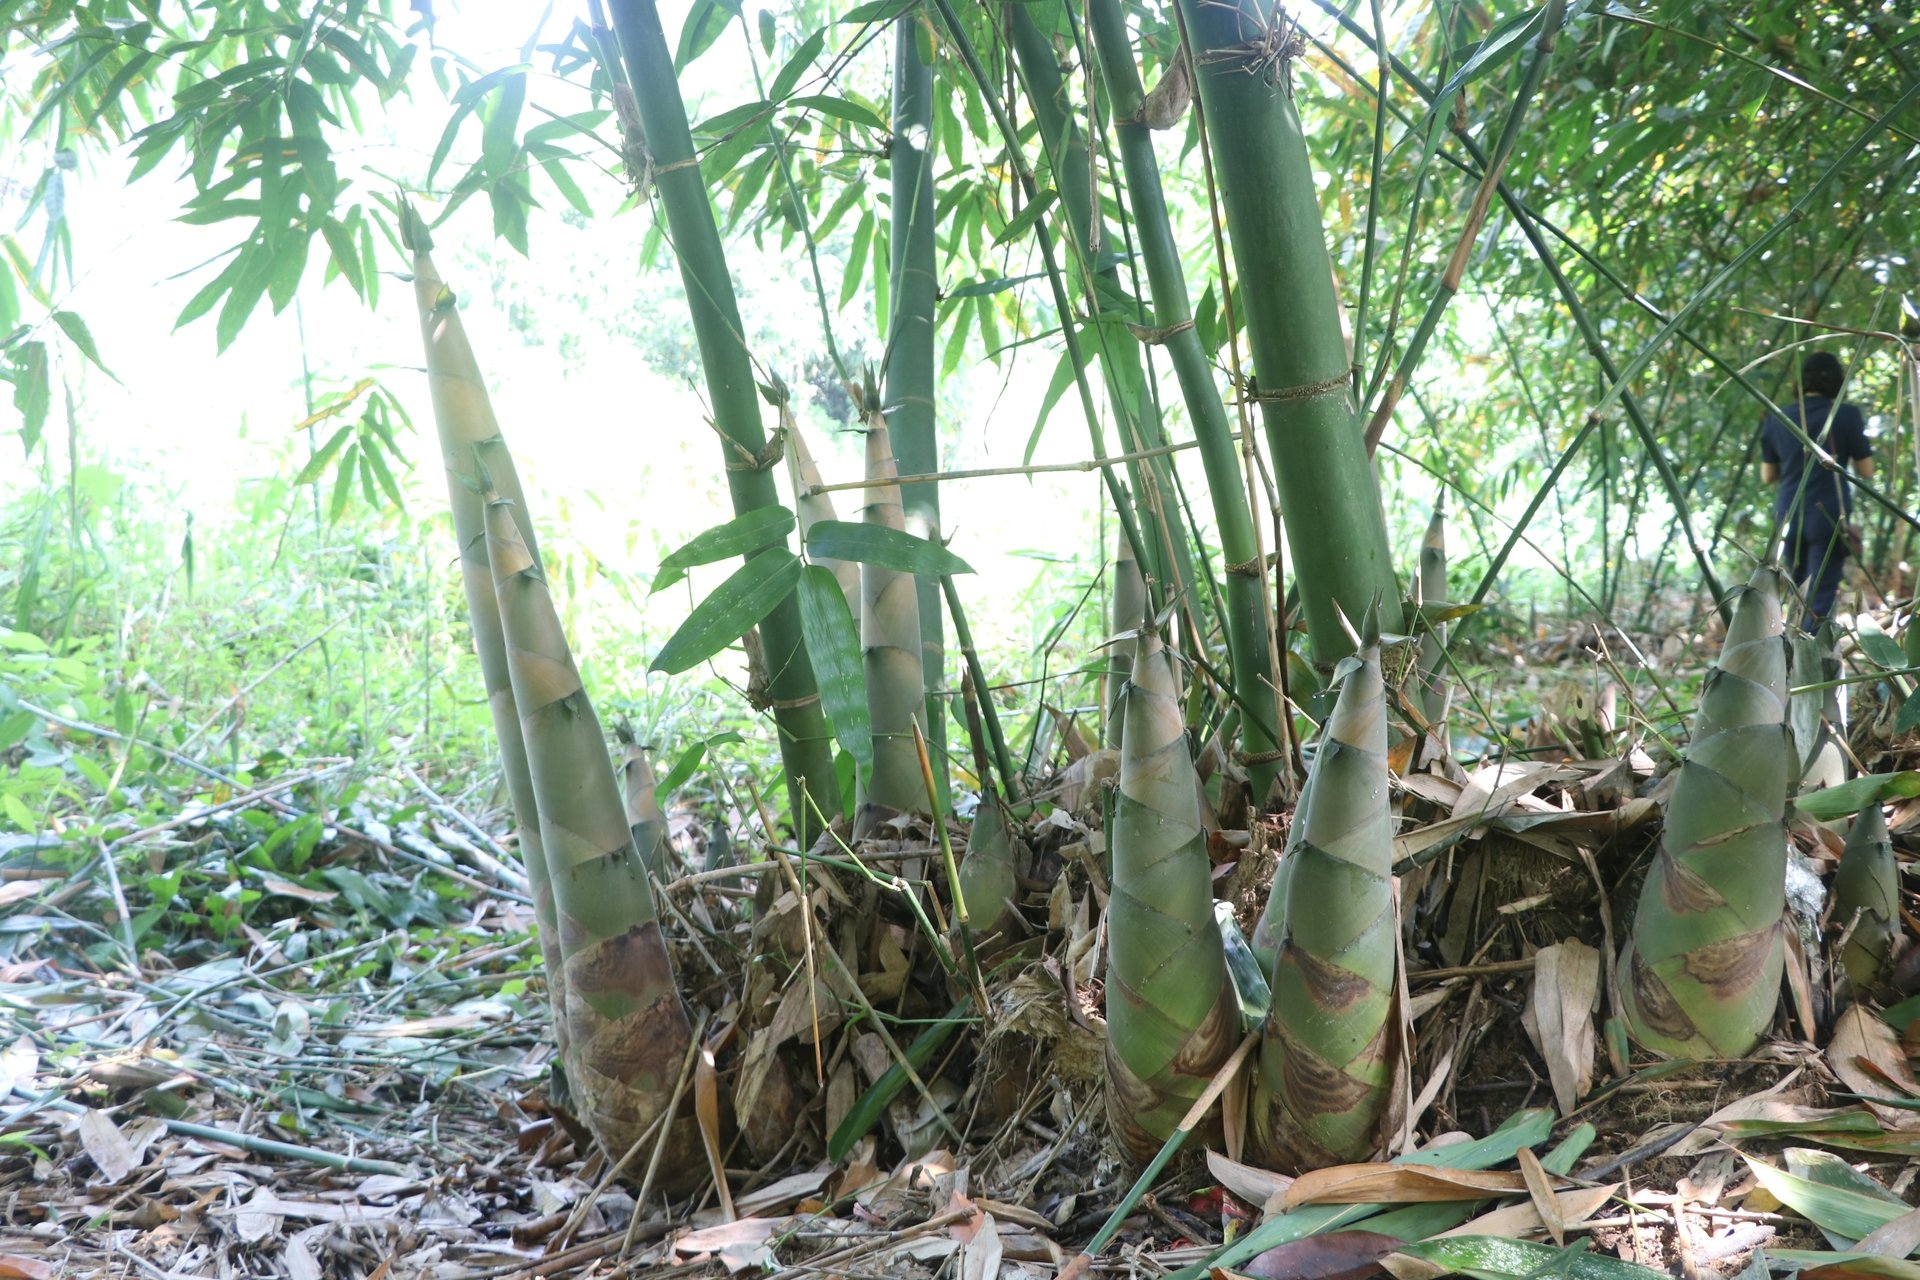 Sau 20 năm phát triển, cây tre Bát Độ đã trở thành cây trồng chủ lực, cho hiệu quả kinh tế cao và bền vững ở huyện Trấn Yên (tỉnh Yên Bái). Ảnh: Thanh Tiến.